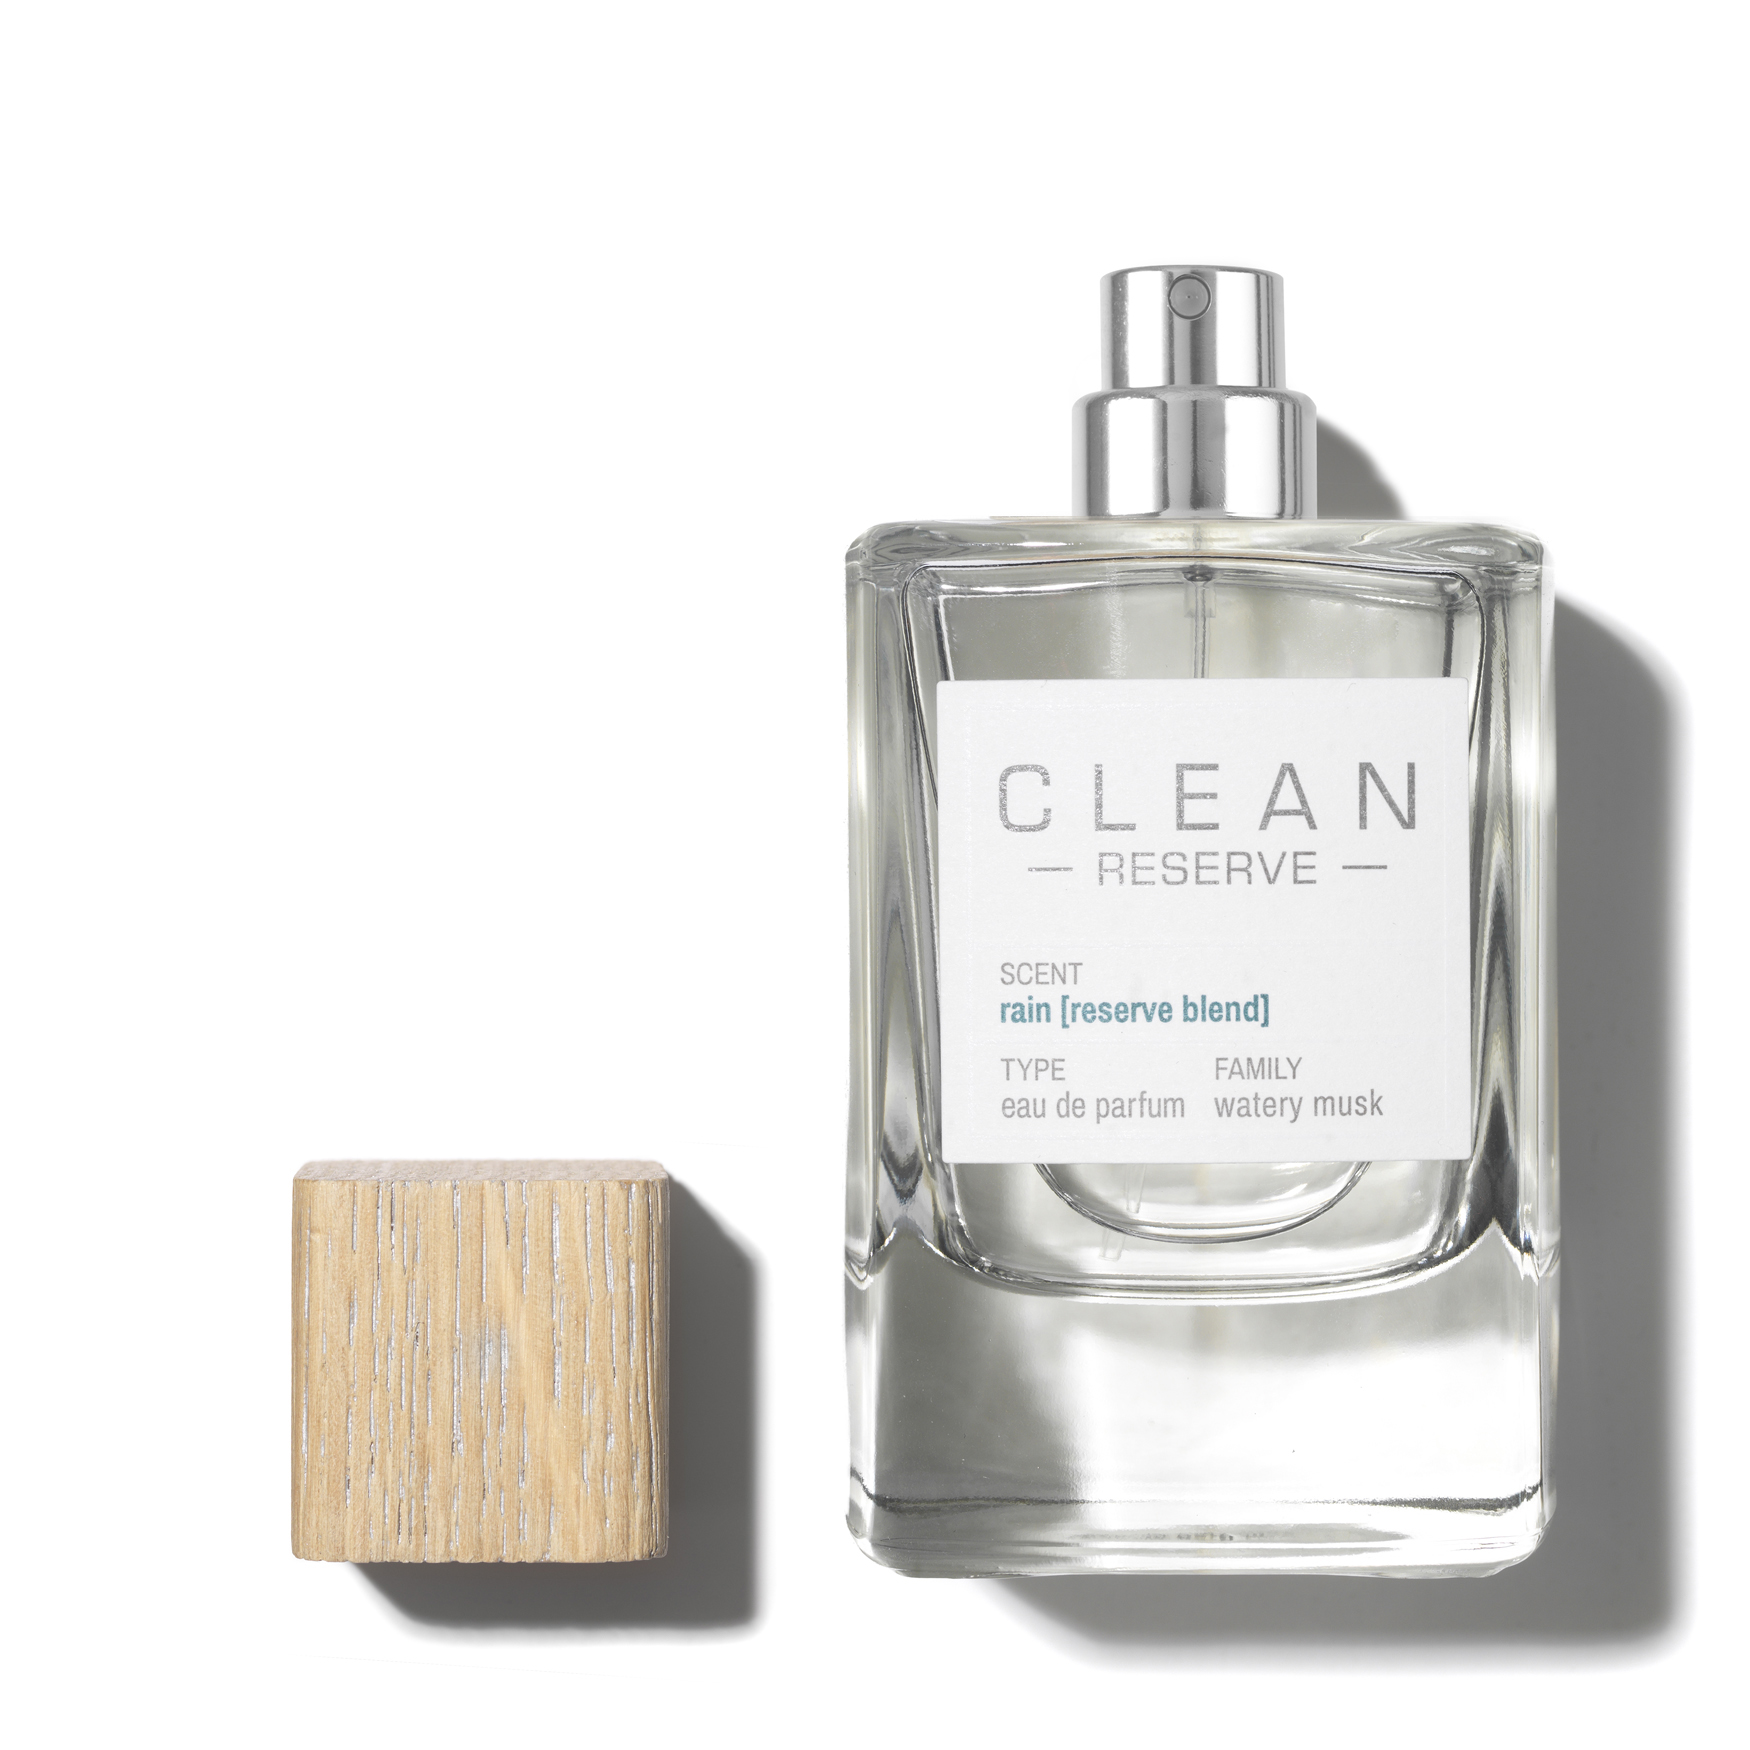 Clean Reserve Rain [Reserve Blend] Eau de Parfum | Space NK